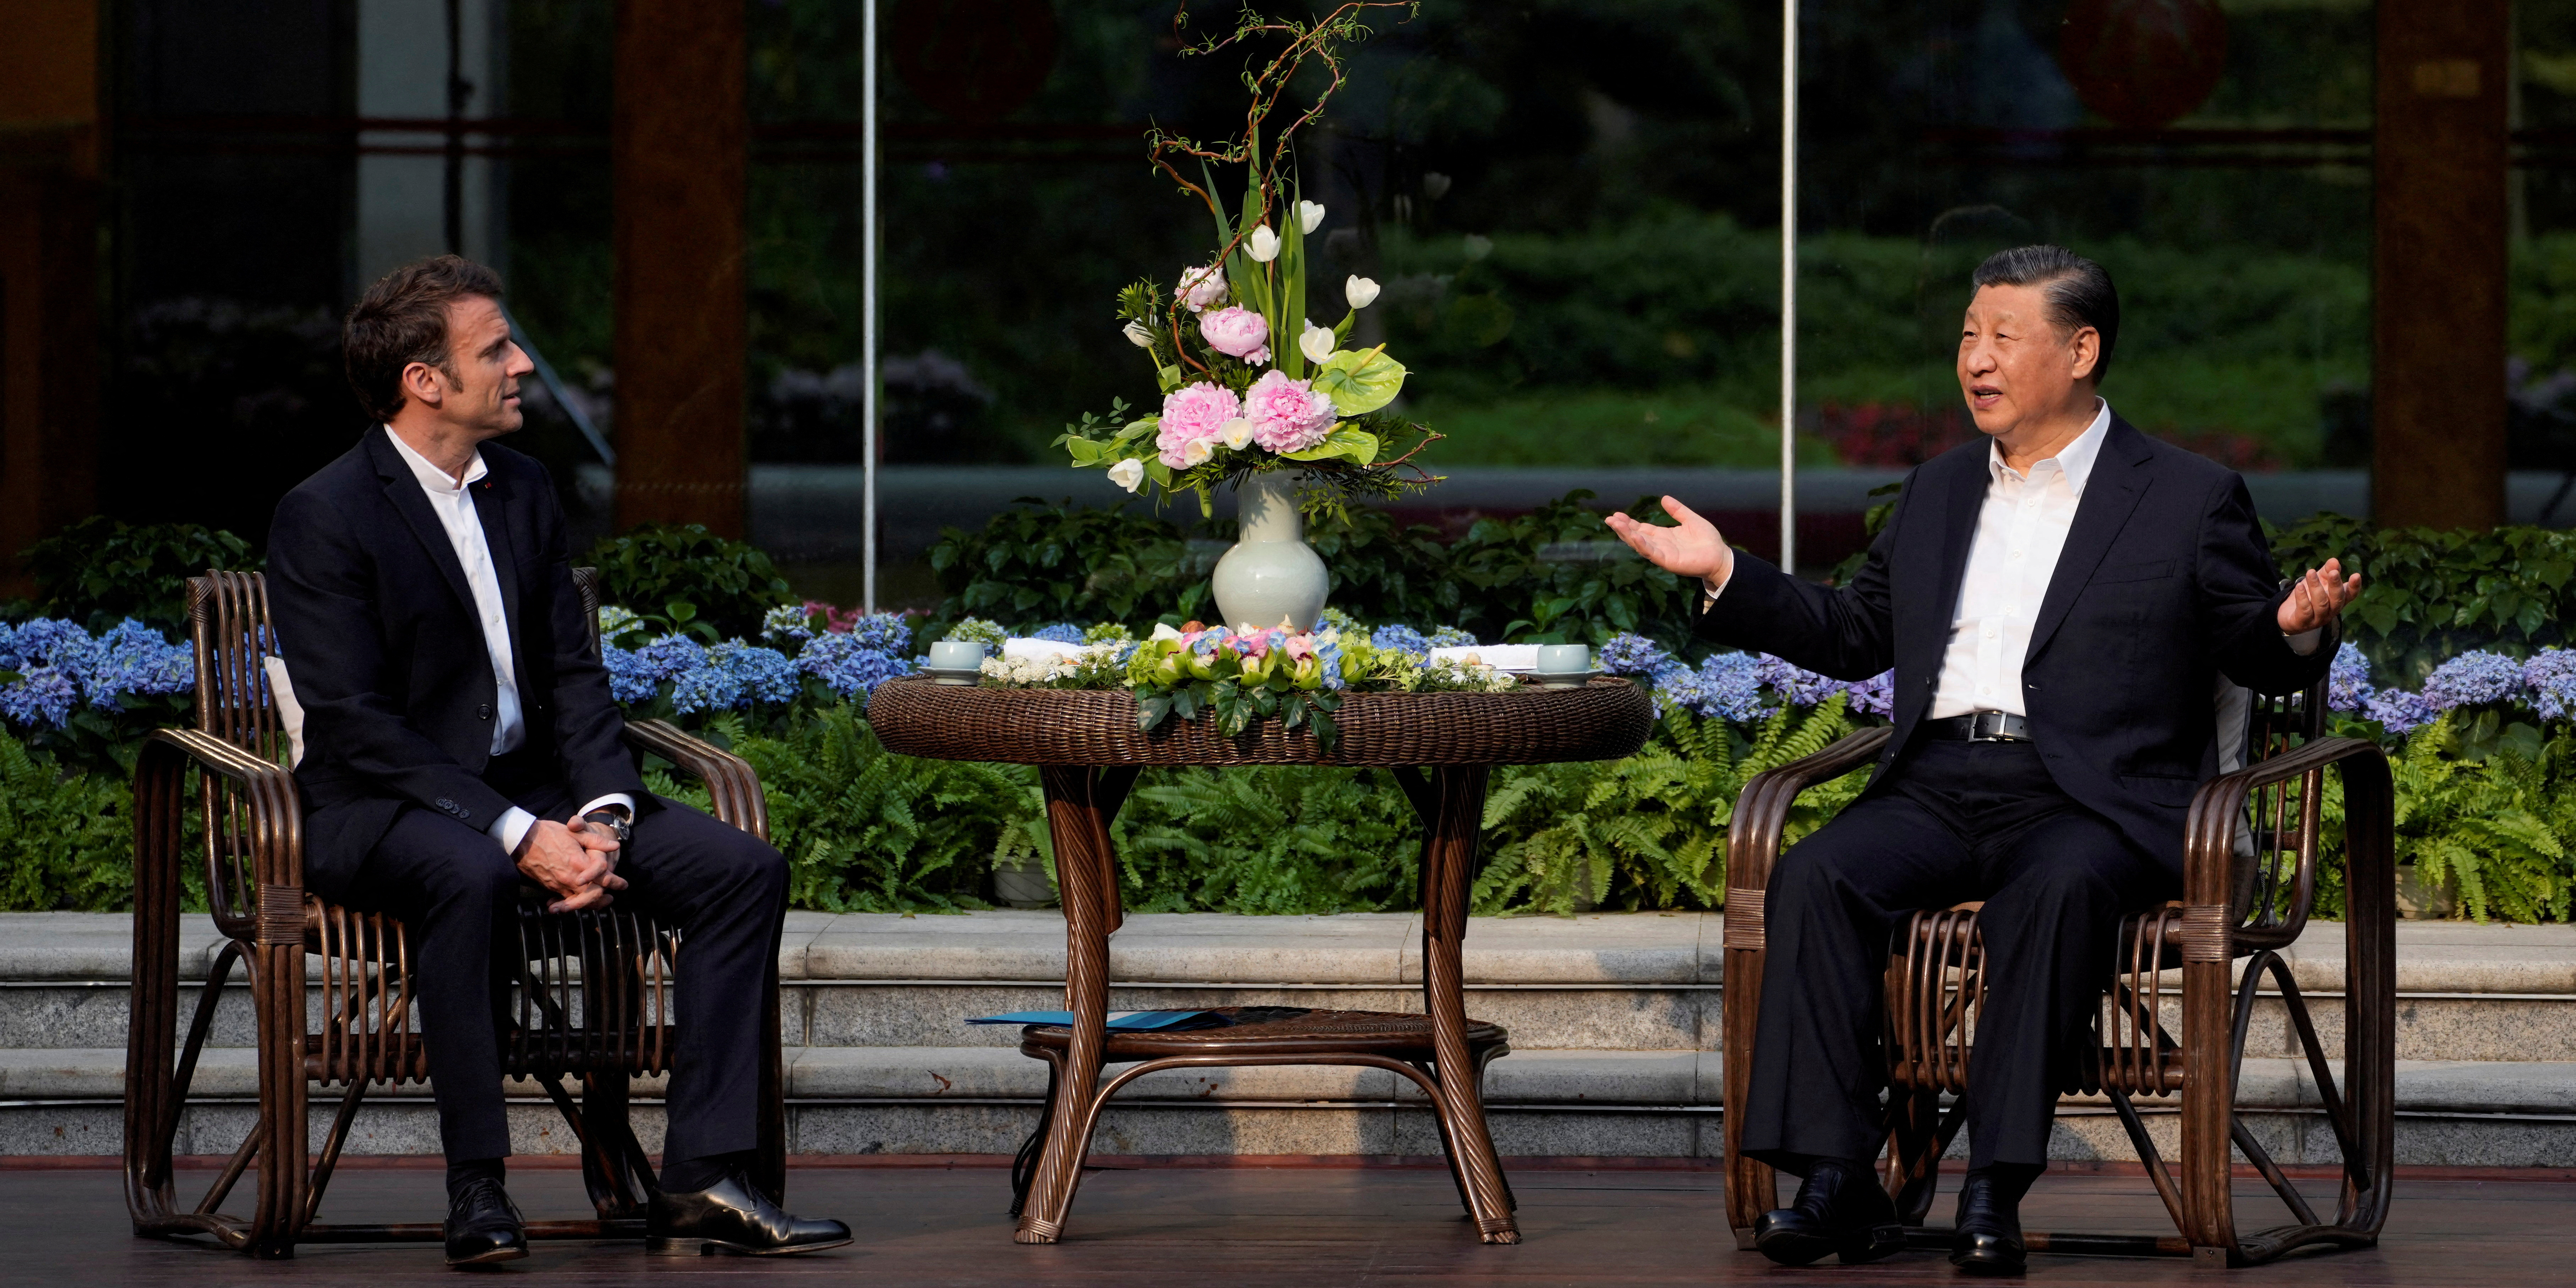 Macron à Pékin : les Européens peuvent-ils freiner le rapprochement sino-russe ?